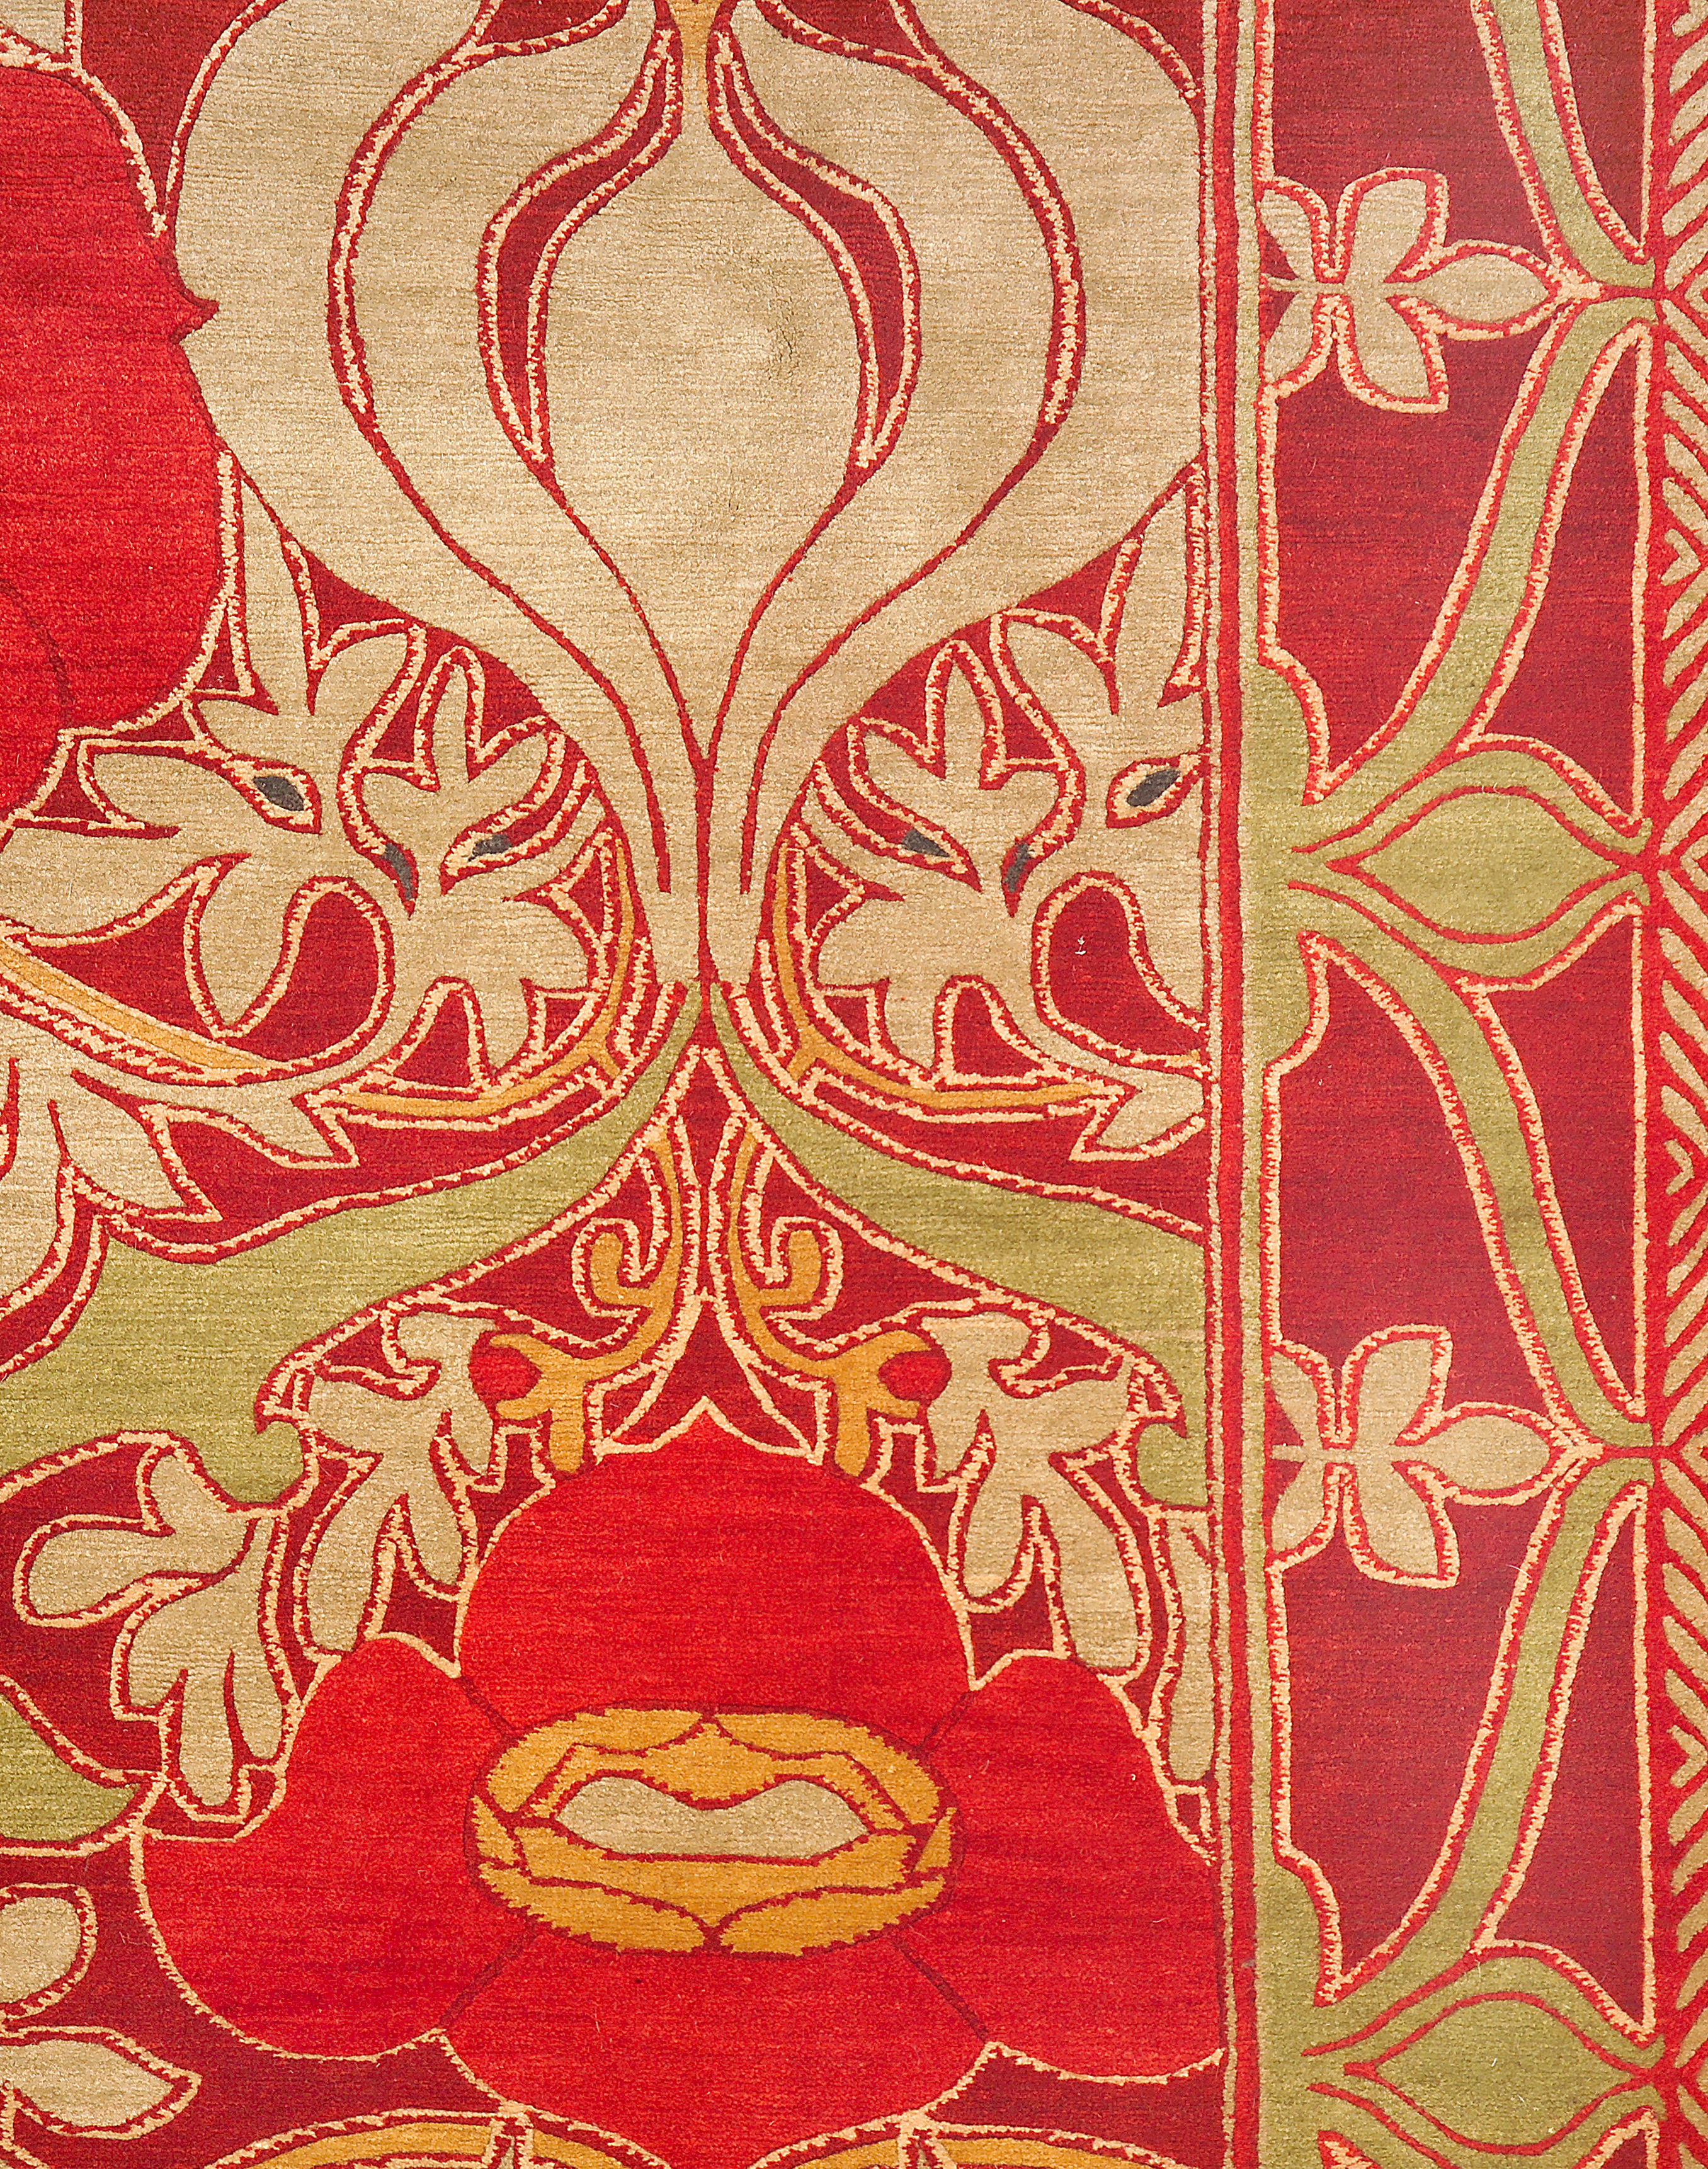 Geba Teppich "Donegal GC" in rot und gold und grün, Anlehnung an einen klassischen Teppich mit Bordüre mit floralem Muster, aus Nepal, 100 Knoten, gefertigt aus tibetischer Hochlandschafwolle - Produktbild - Geba Teppich